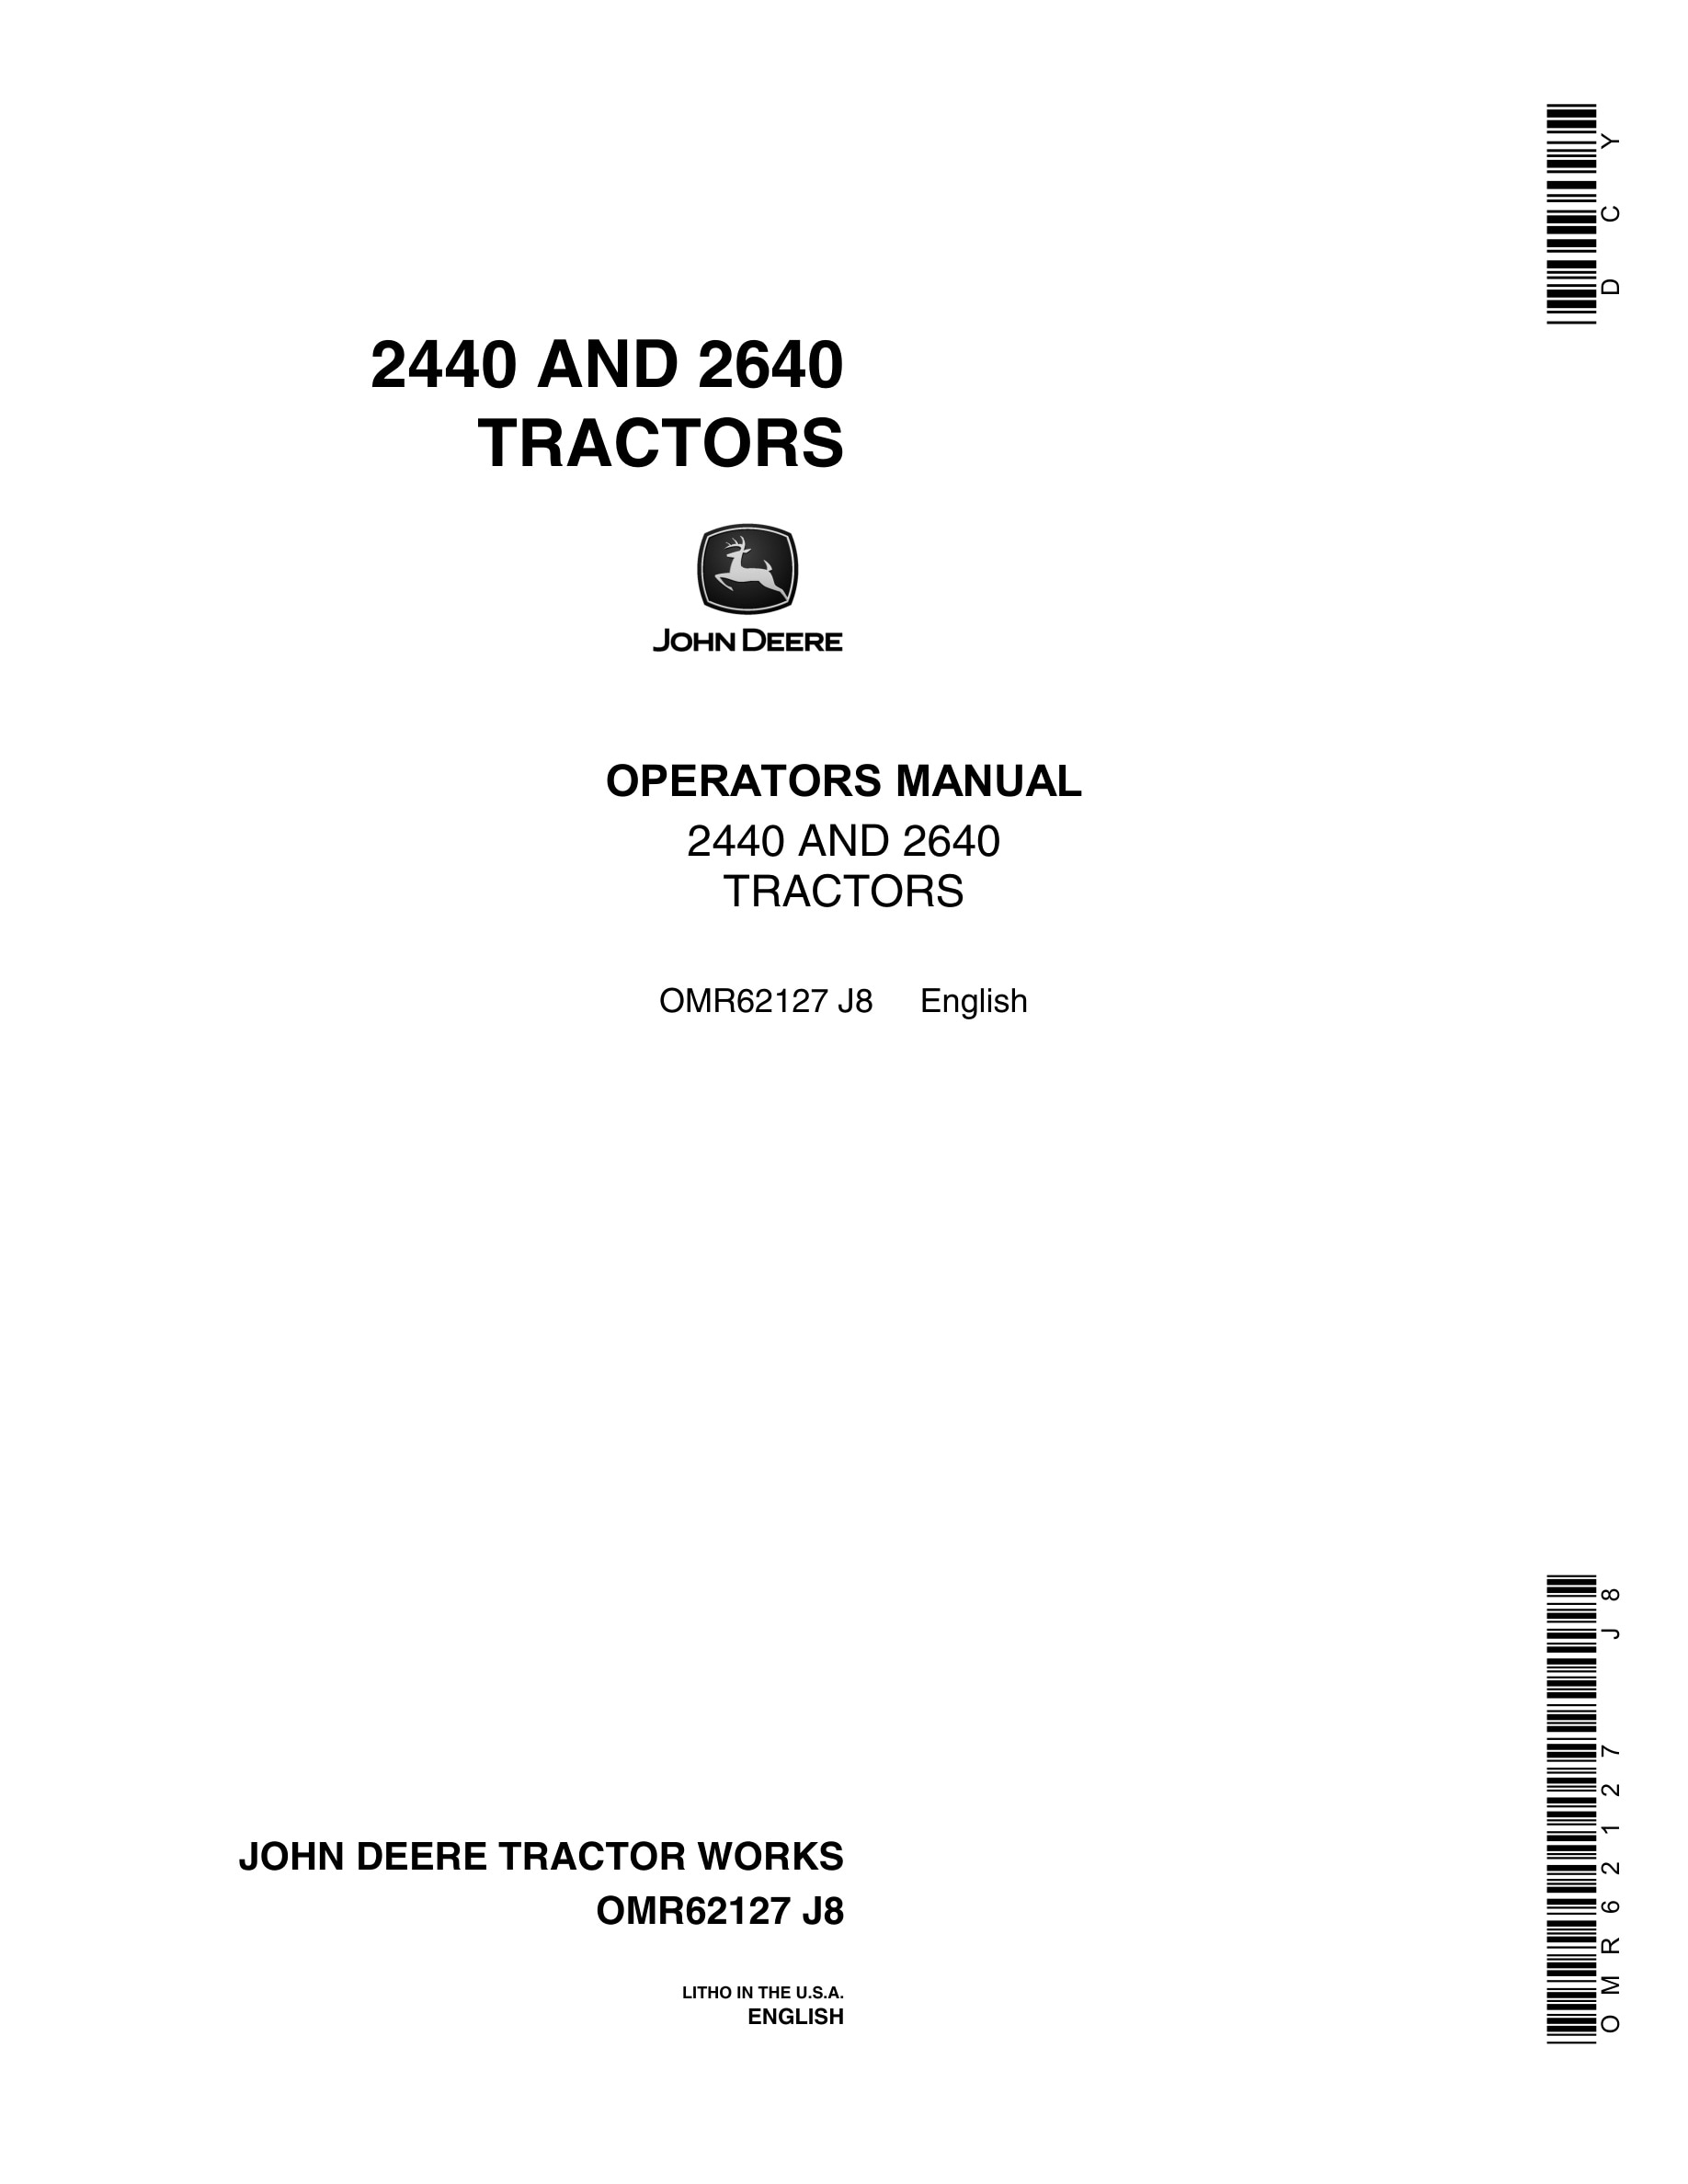 John Deere 2440 AND 2640 Tractor Operator Manual OMR62127-1